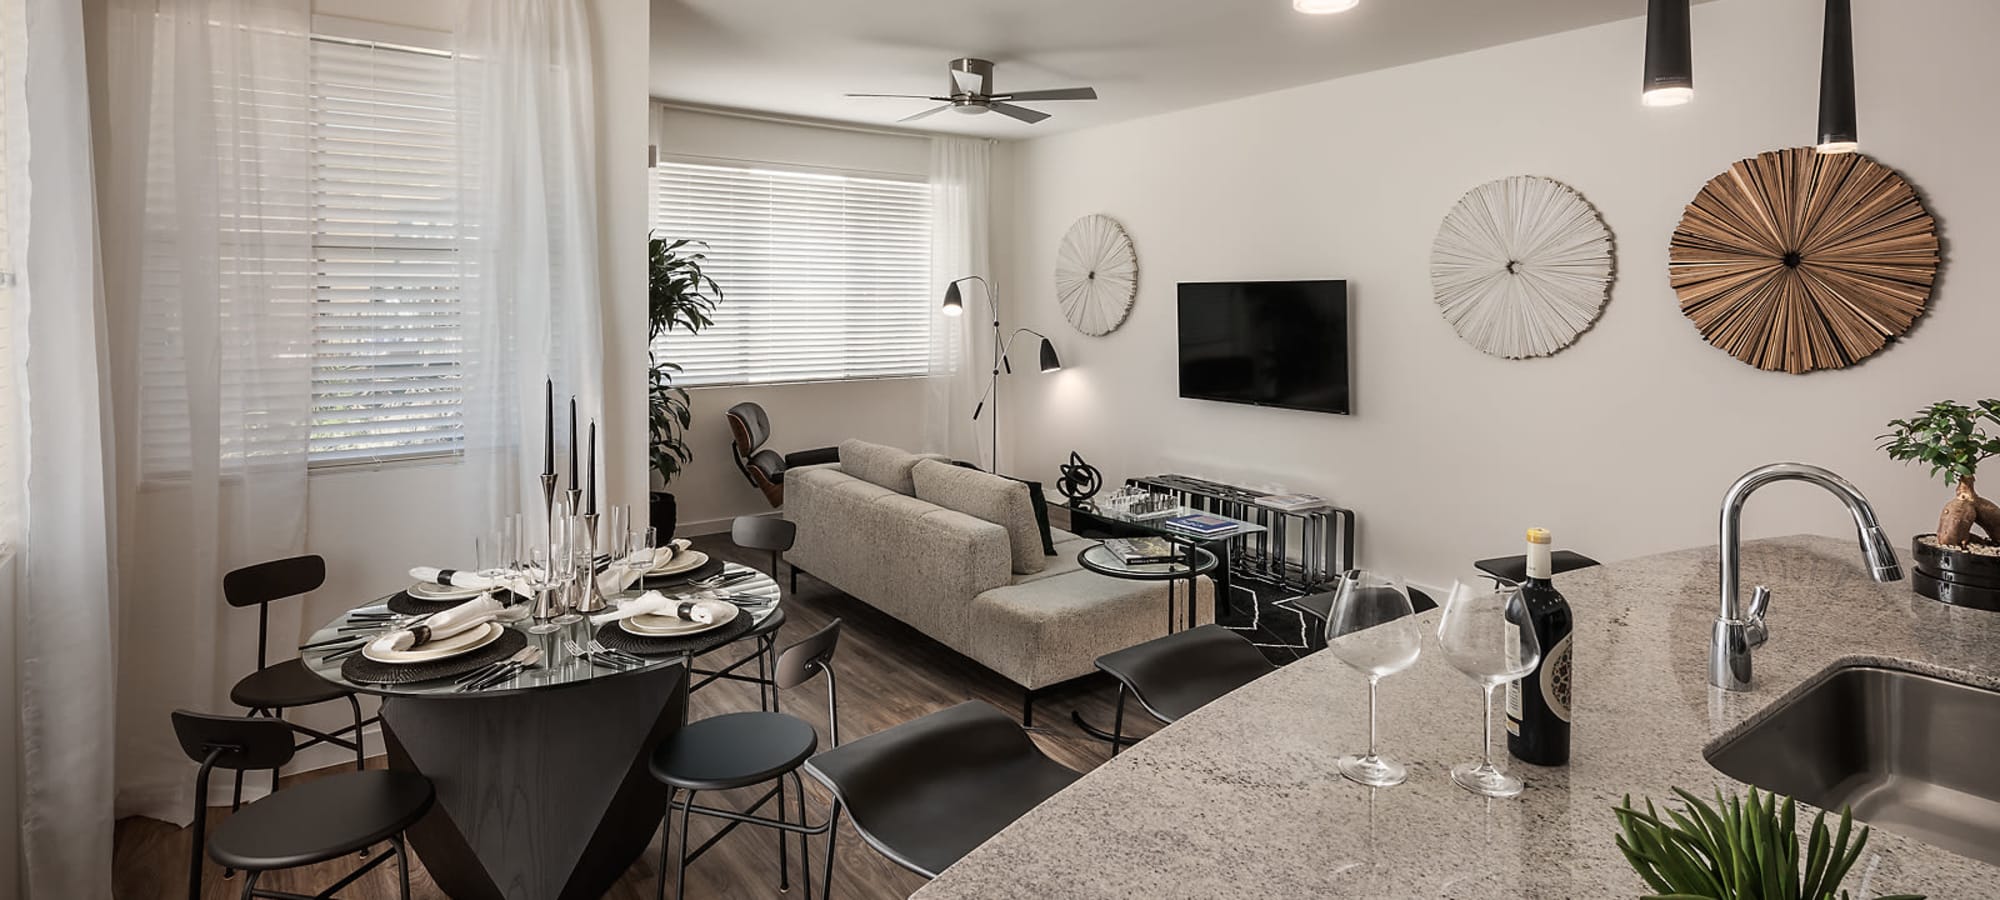 Living Room at Villa Vita Apartments in Peoria, Arizona